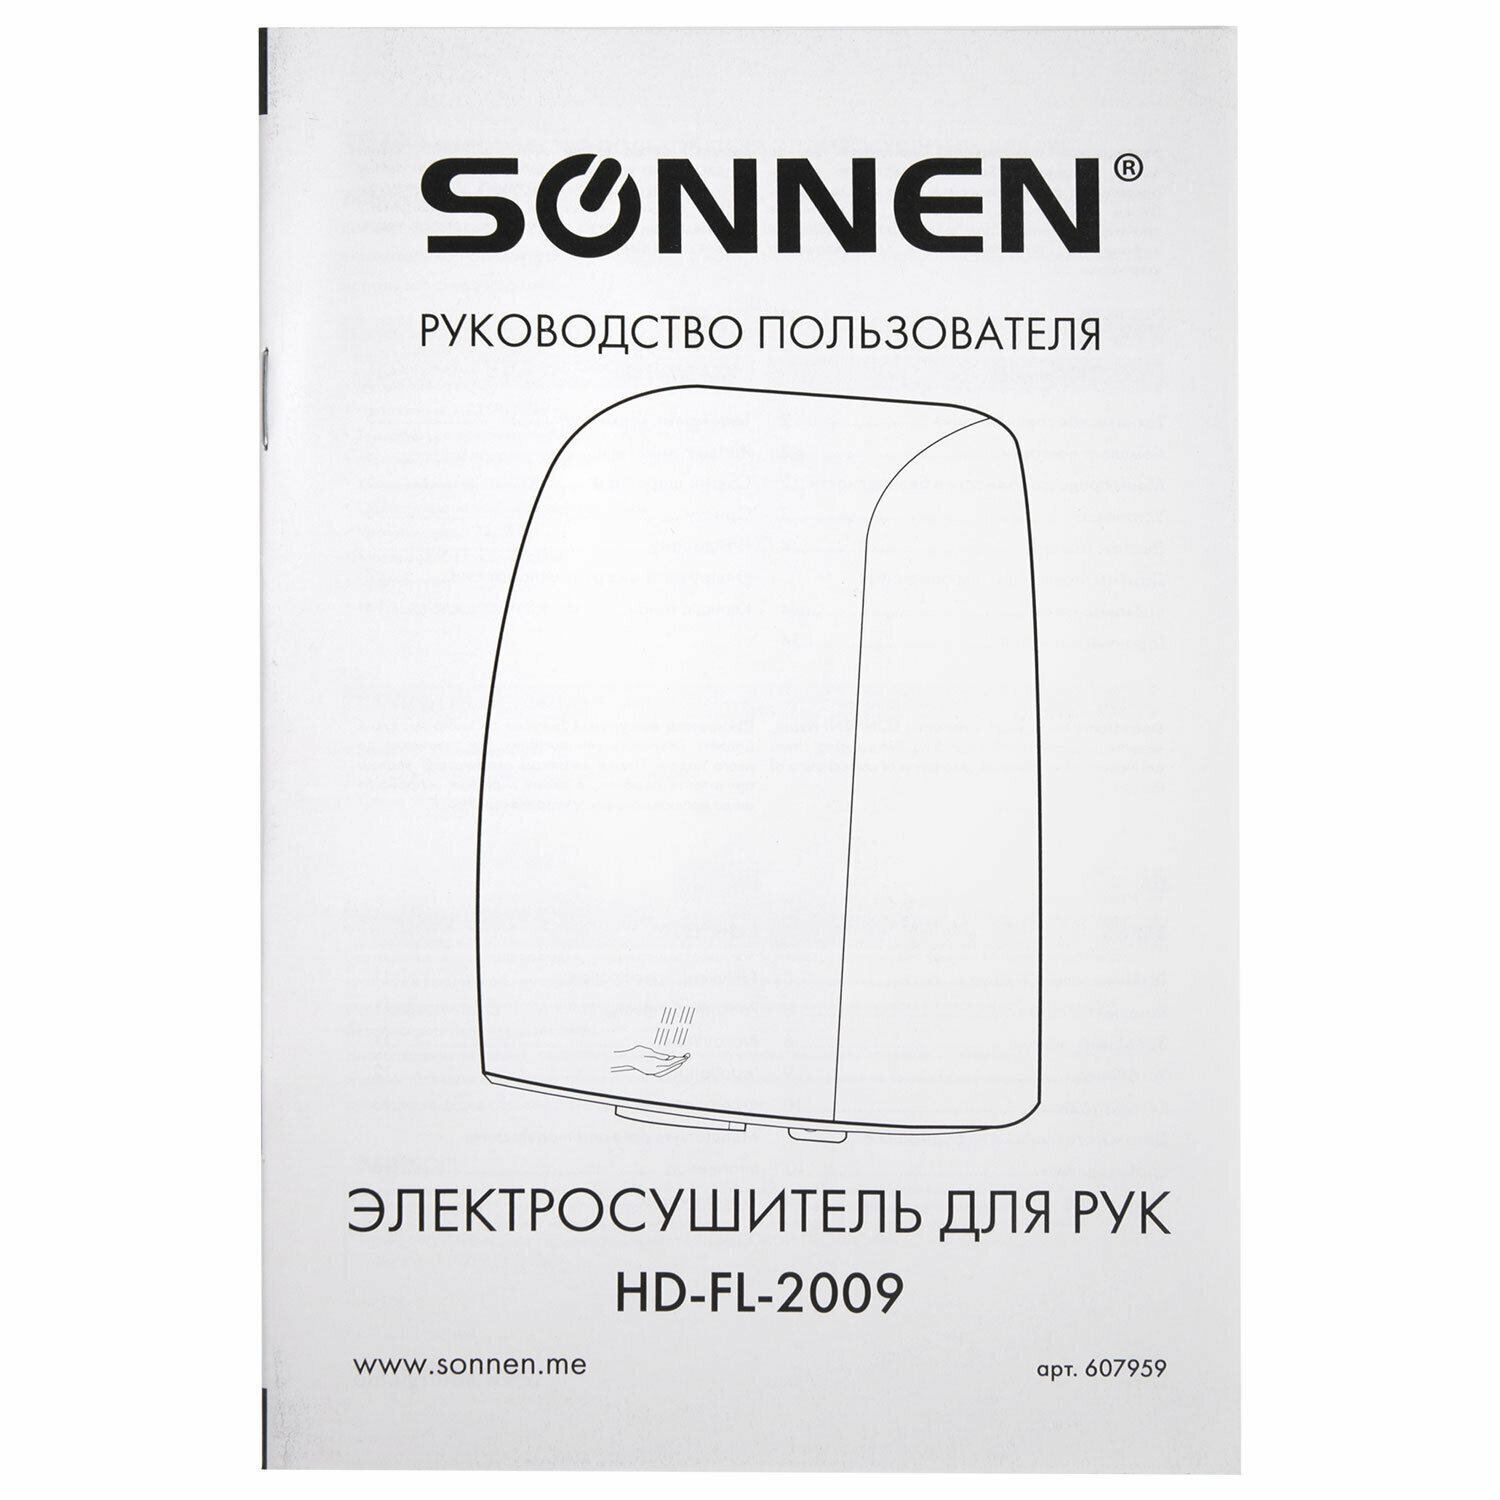 Сушилка высокоскоростная для рук SONNEN HD-FL-2009, 1200 Вт, пластиковый корпус, белая, 607959. 607959 - фотография № 7